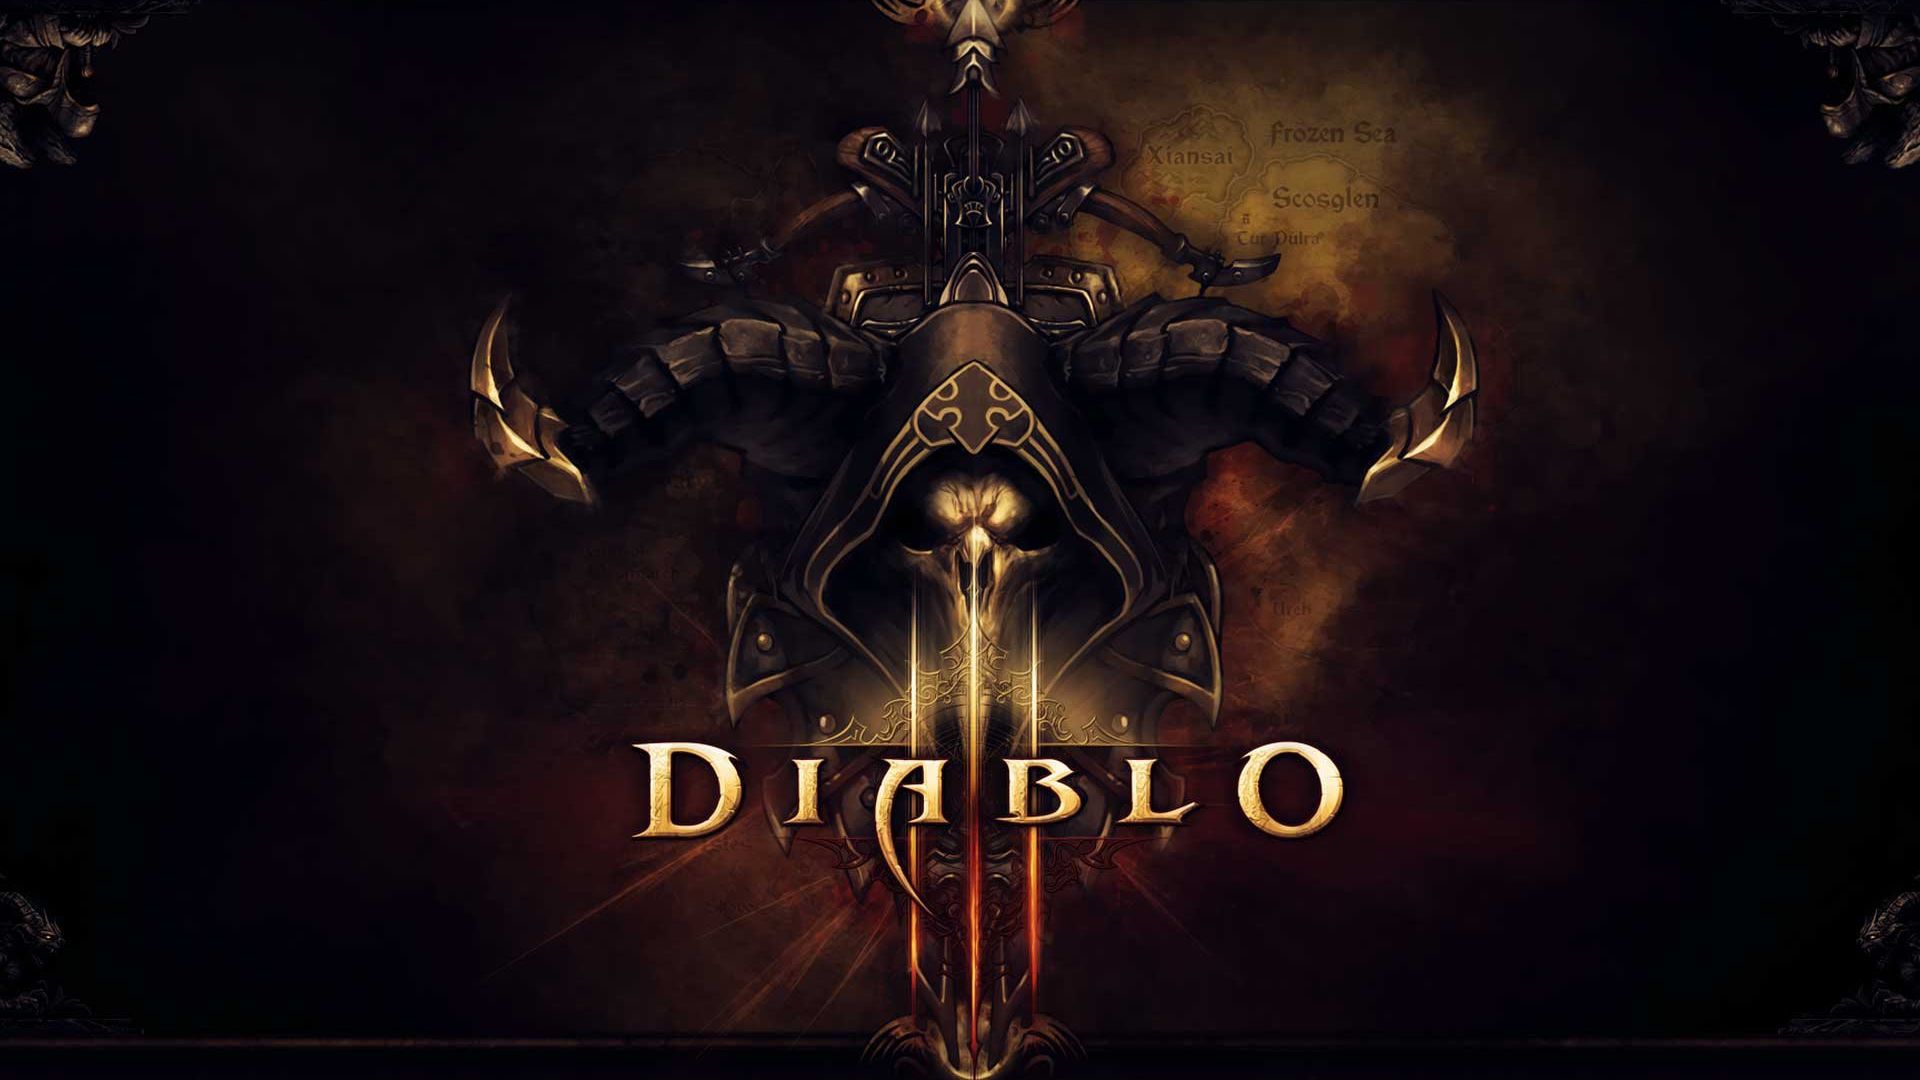 Diablo 3 Wallpaper Hd - HD Wallpaper 